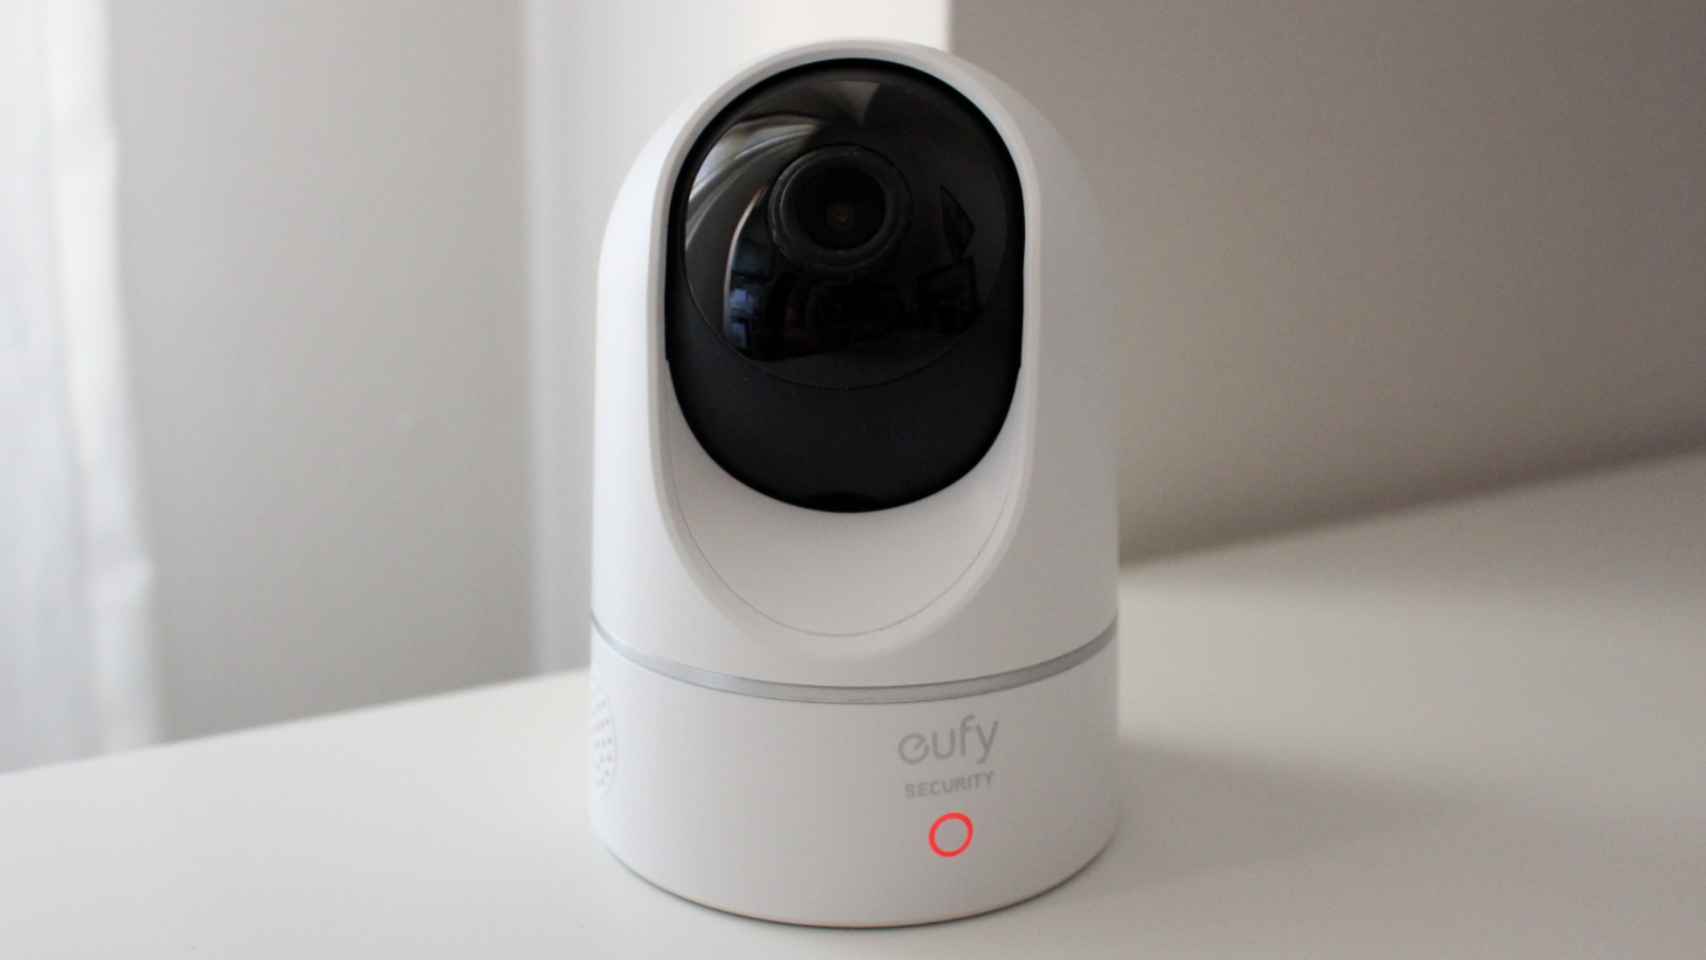 Son buenas las cámaras de seguimiento para la seguridad del hogar? - Todo  Robot